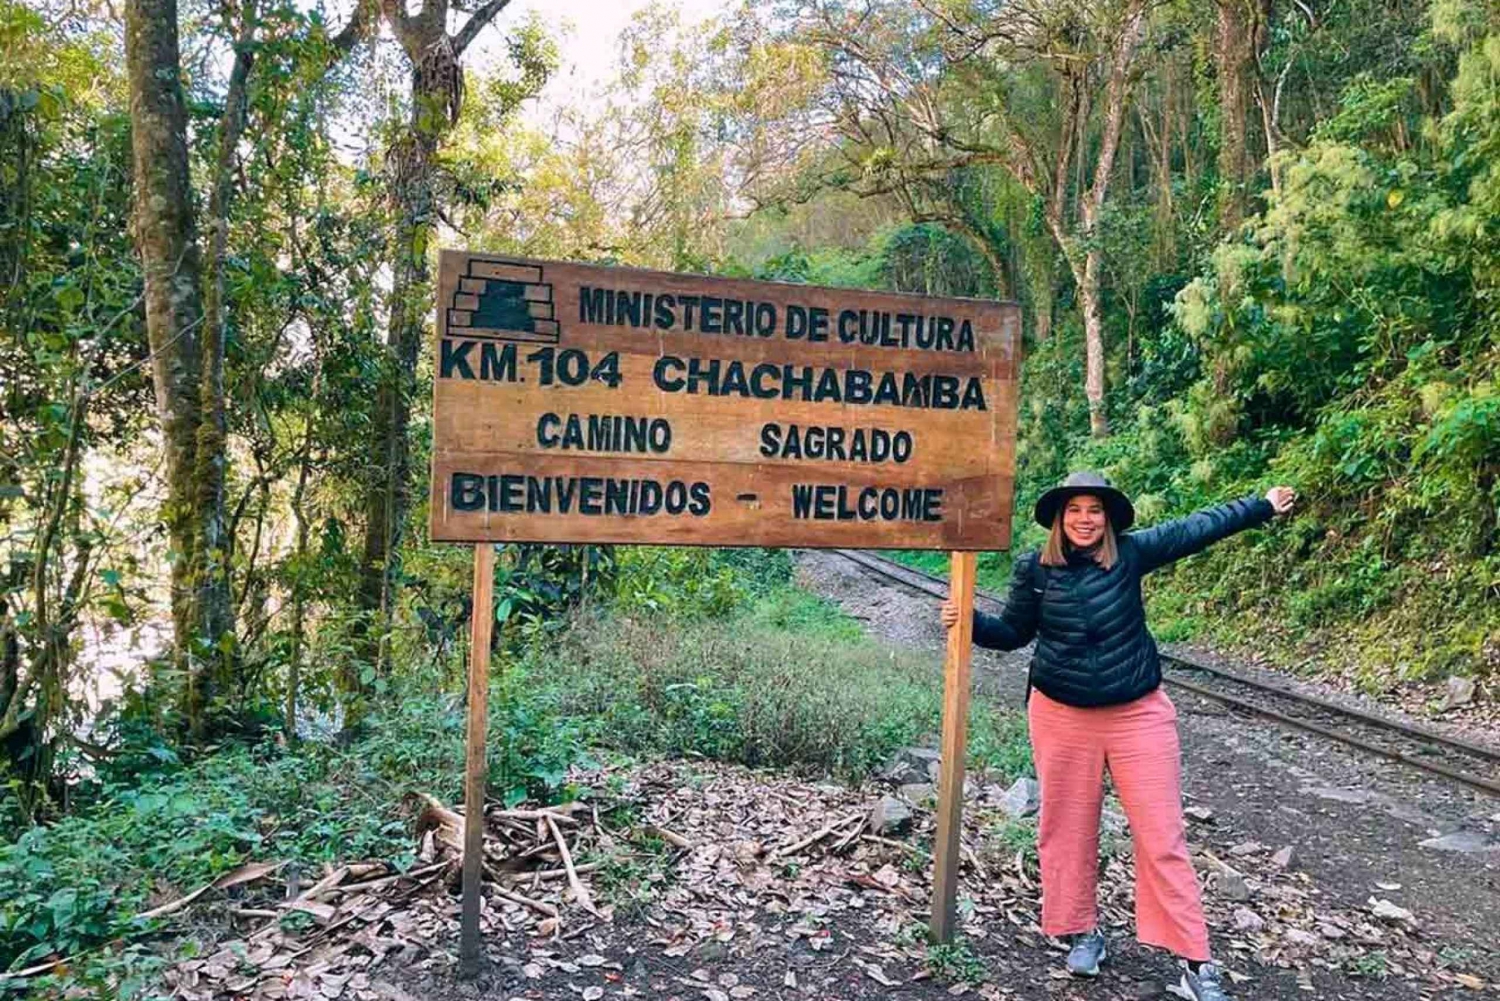 Smoll Group | Inkaleden 2 dagar - ny väg till Machu Picchu